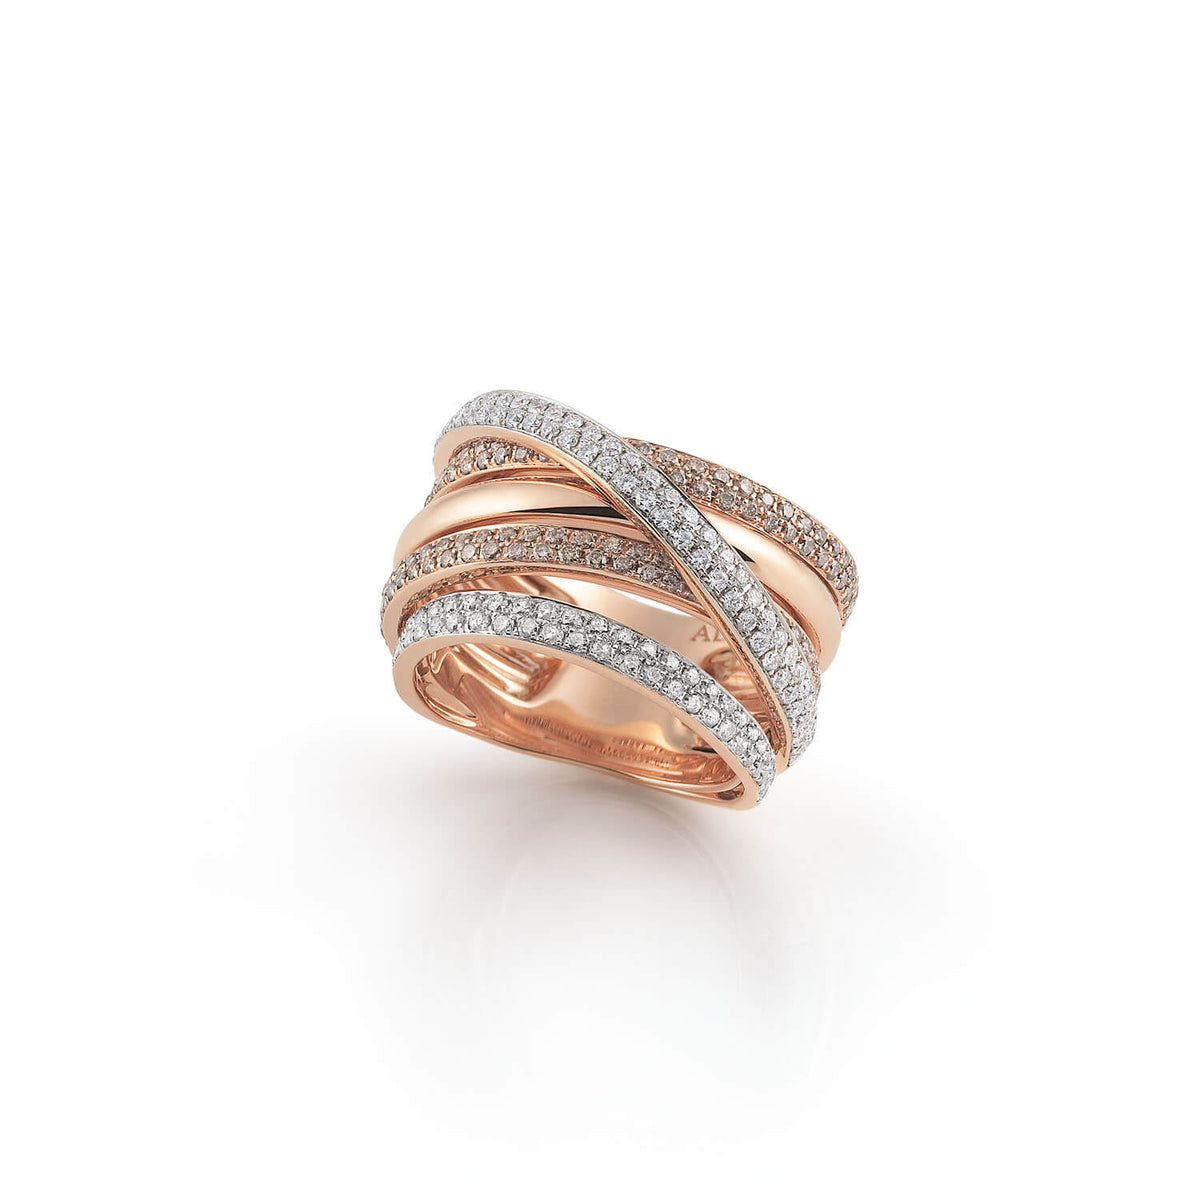 Al Coro Serenata Ring Brown and White Diamonds 18k Gold - Orsini Jewellers